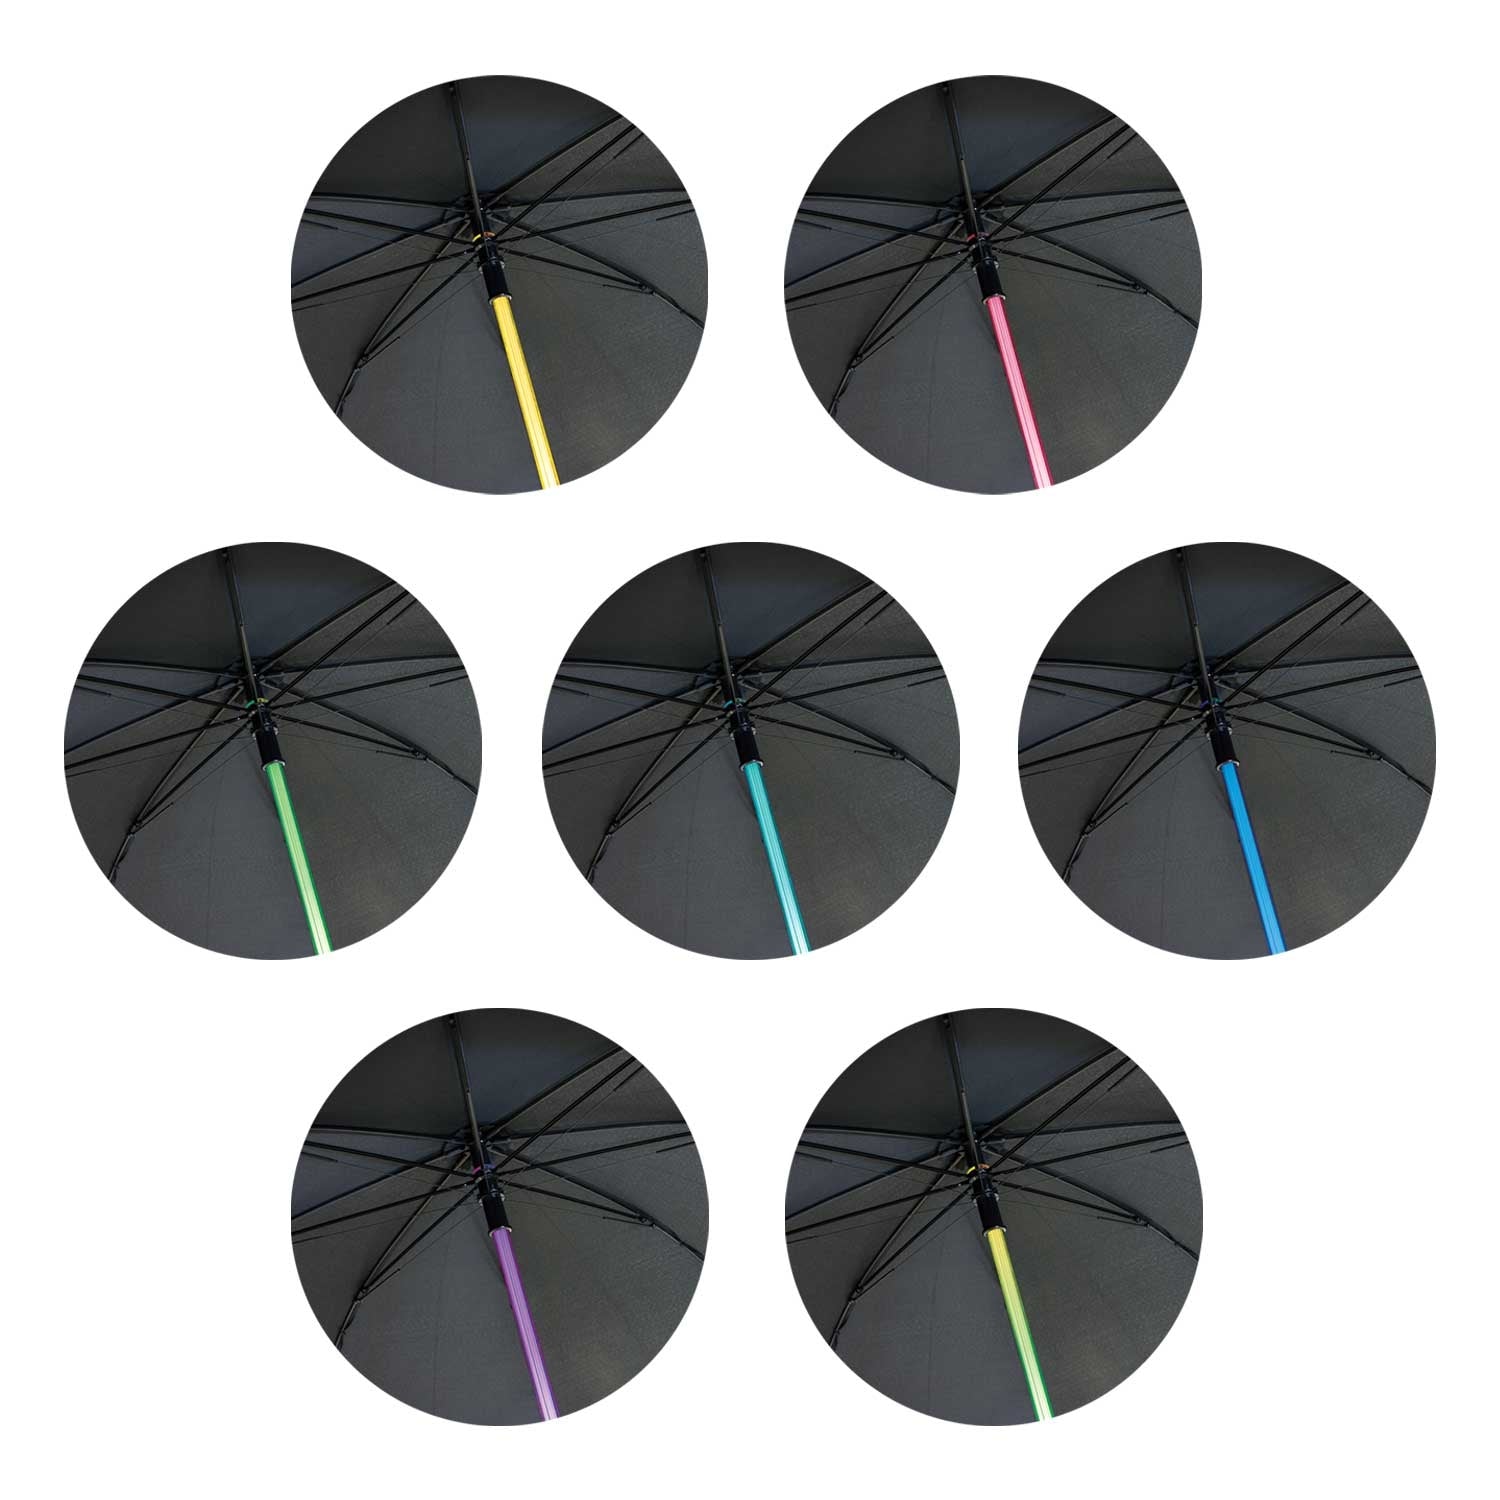 Light Sabre Umbrella [113154]